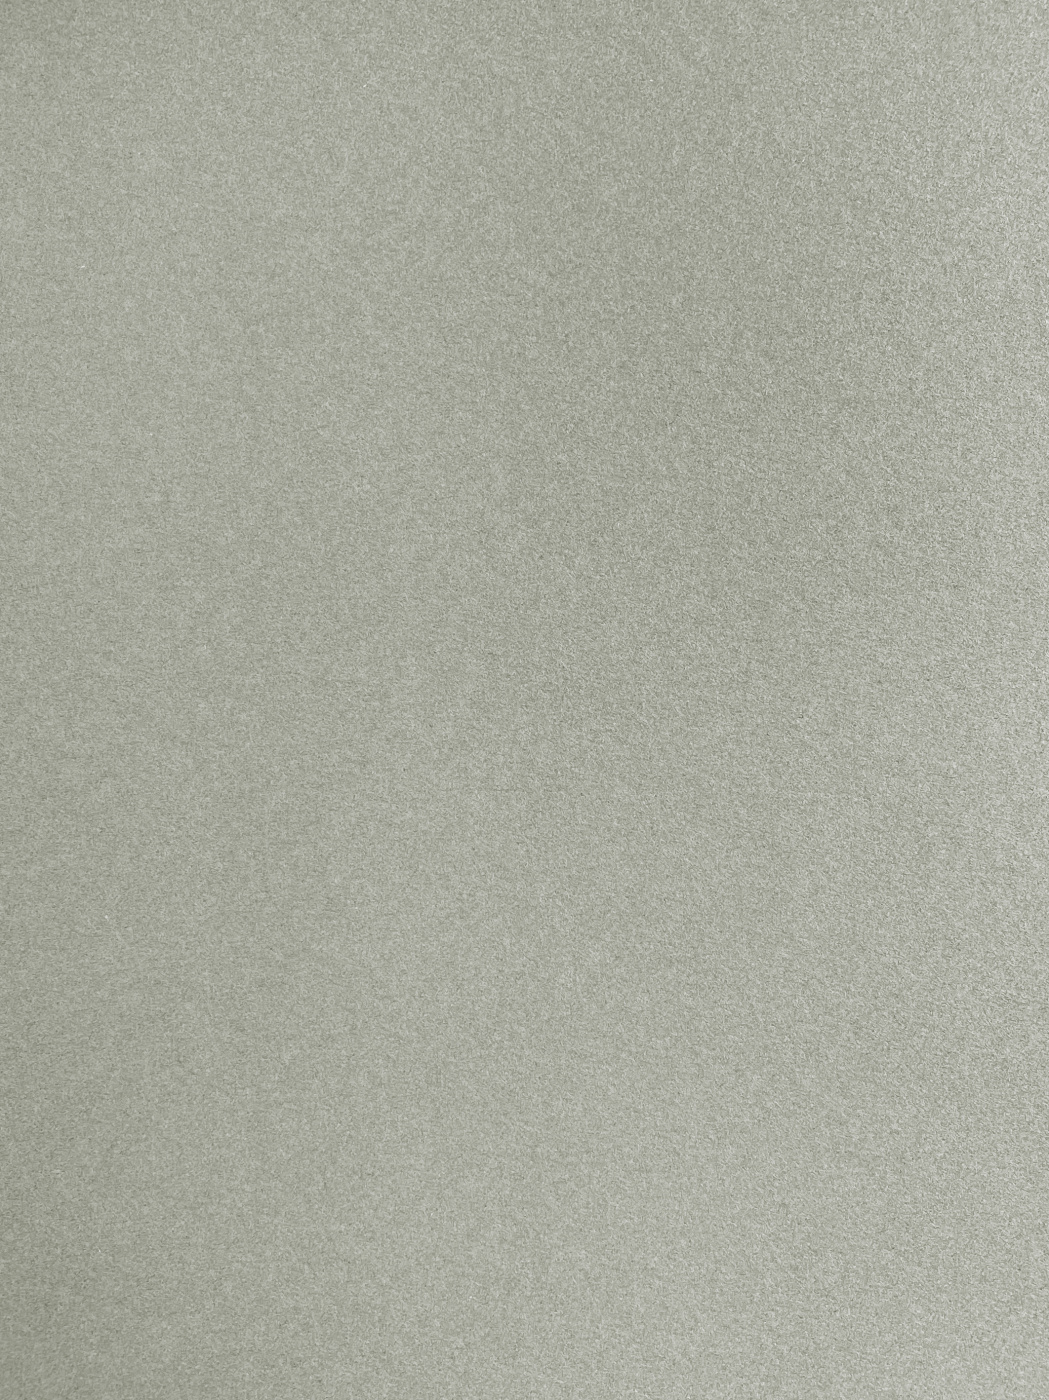 Бумага для пастели Малевичъ GrafArt А4 270 г, серая теплая бумага для декора и флористики крафт коричневая однотонная двусторонняя рулон 1шт 0 72 x 50 м